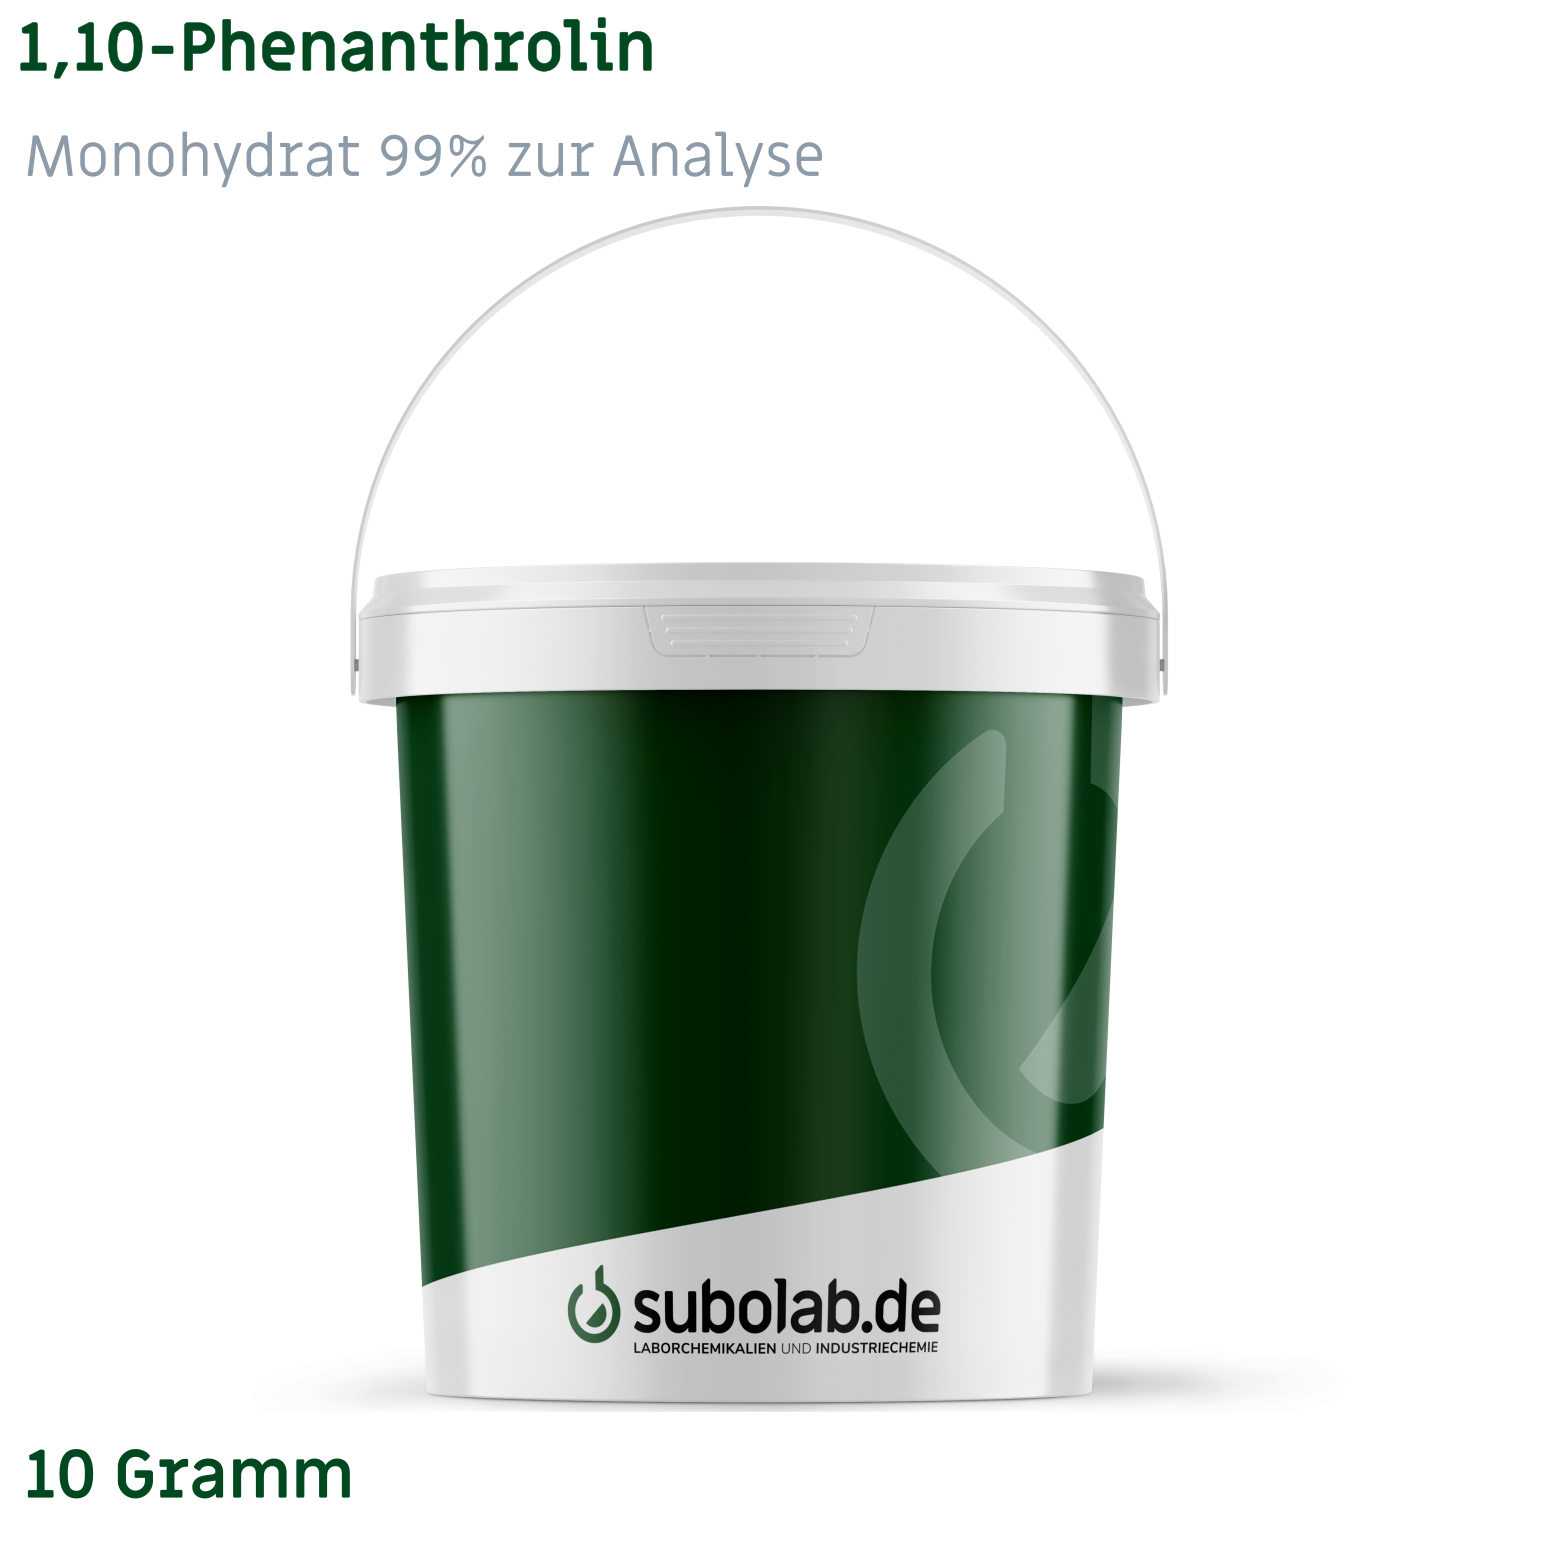 Bild von 1,10-Phenanthrolin - Monohydrat 99% zur Analyse (10 Gramm)